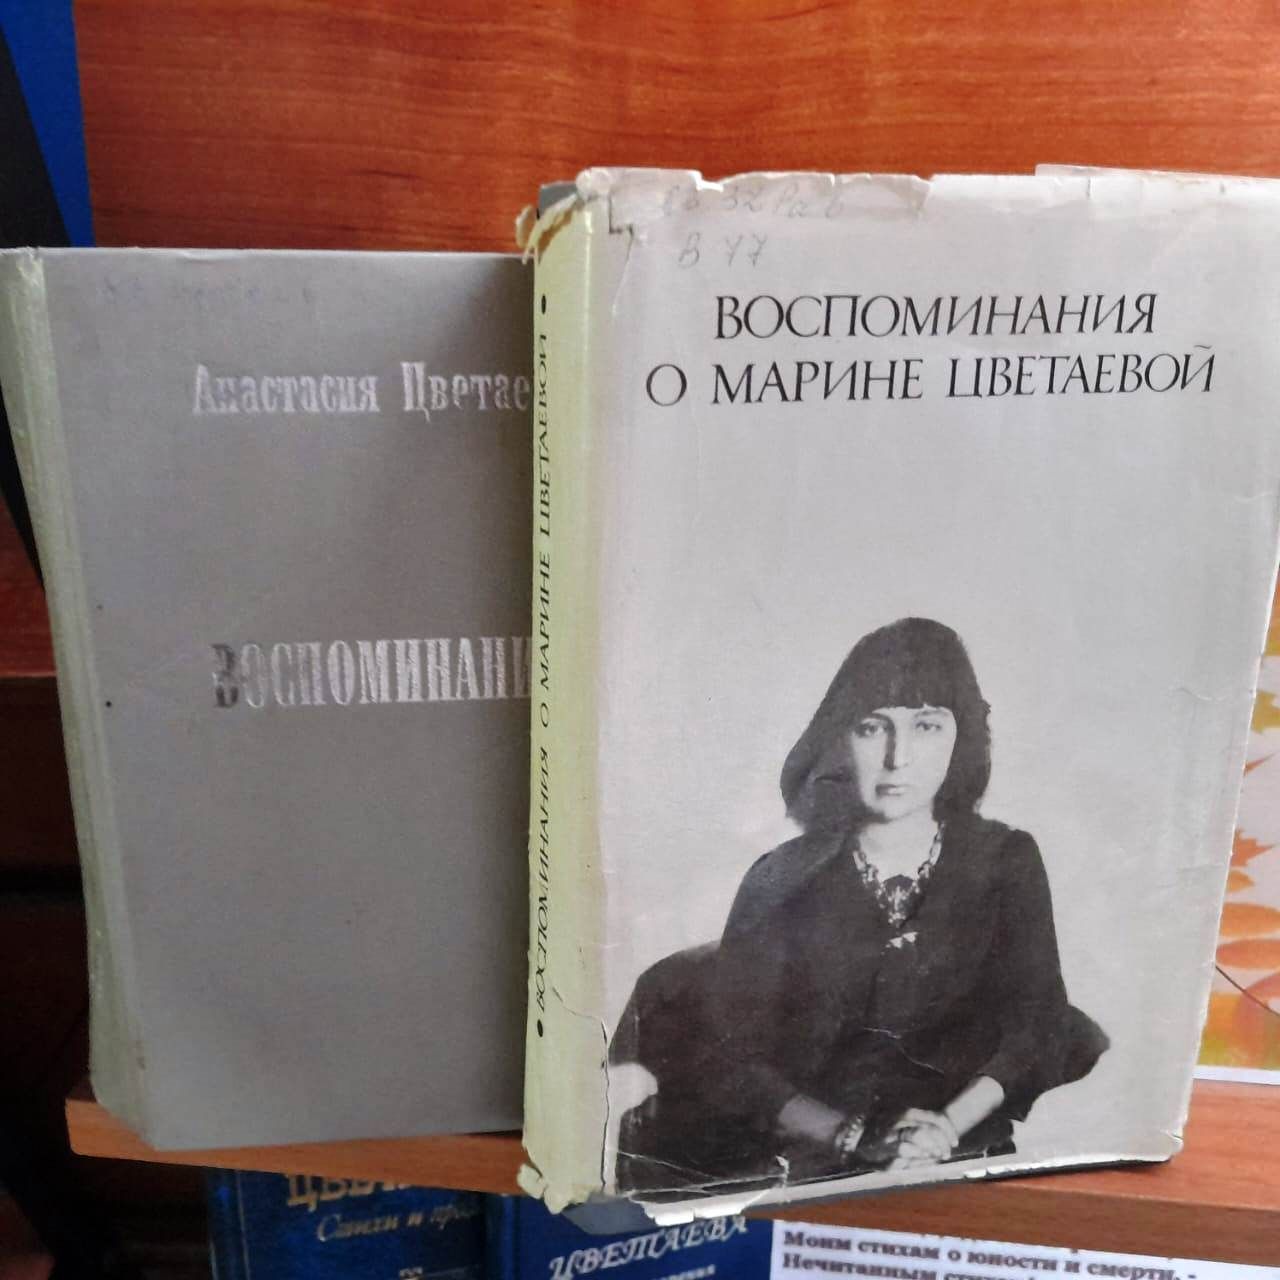 В Лаишевской библиотеке отметили юбилей Марины Цветаевой